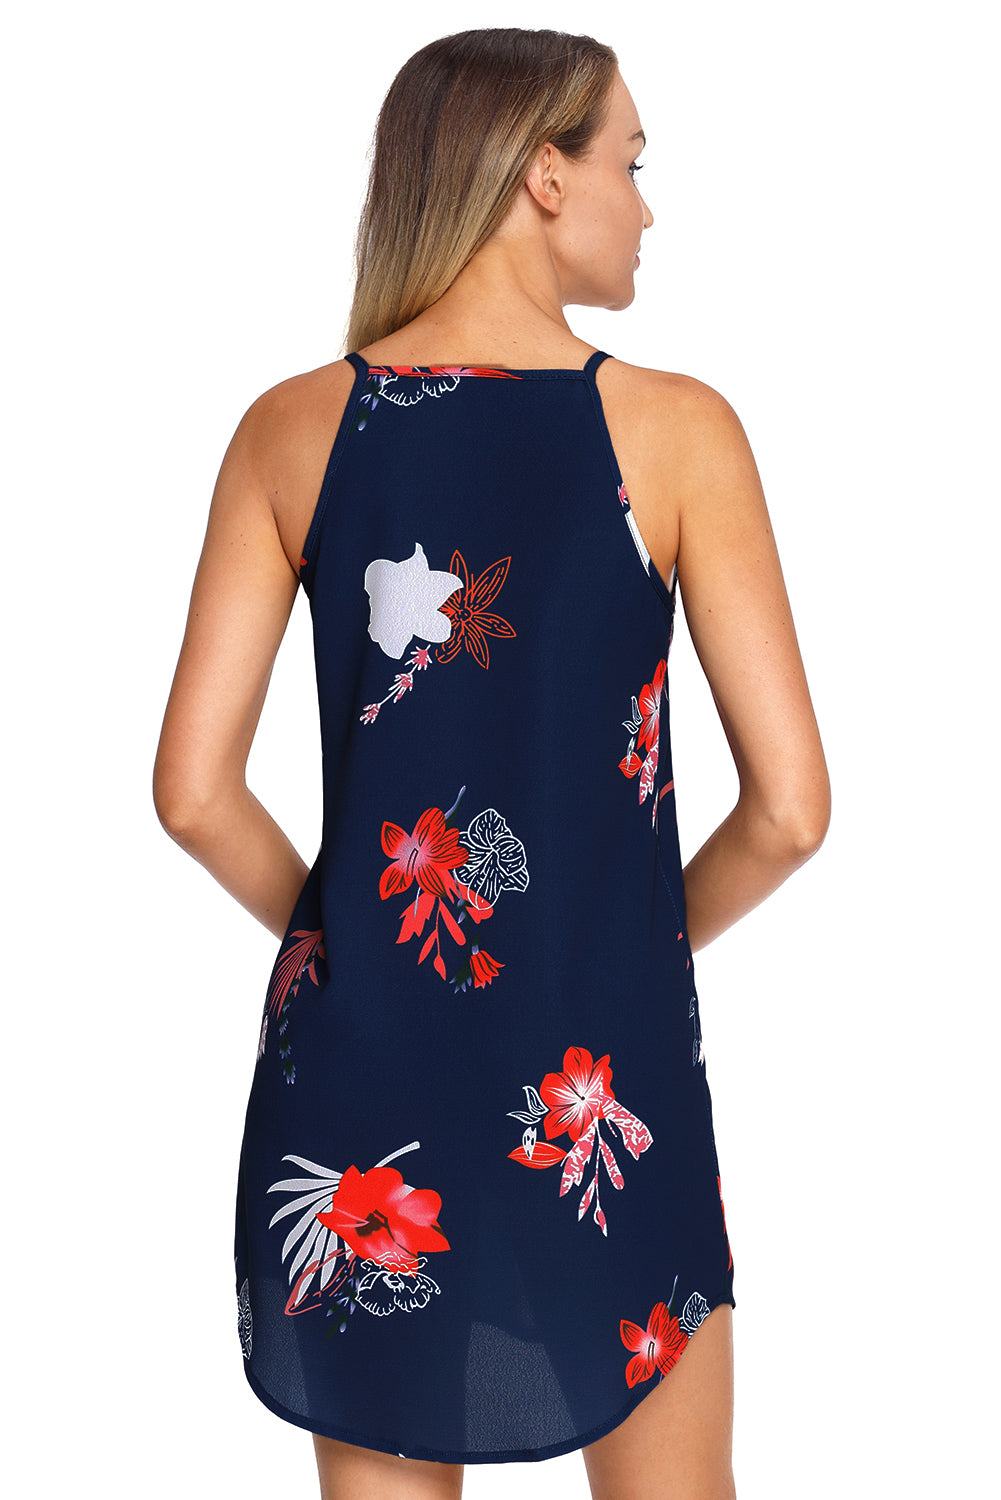 Blühendes ärmelloses Kleid in Marineblau mit Blumenmuster in Rot